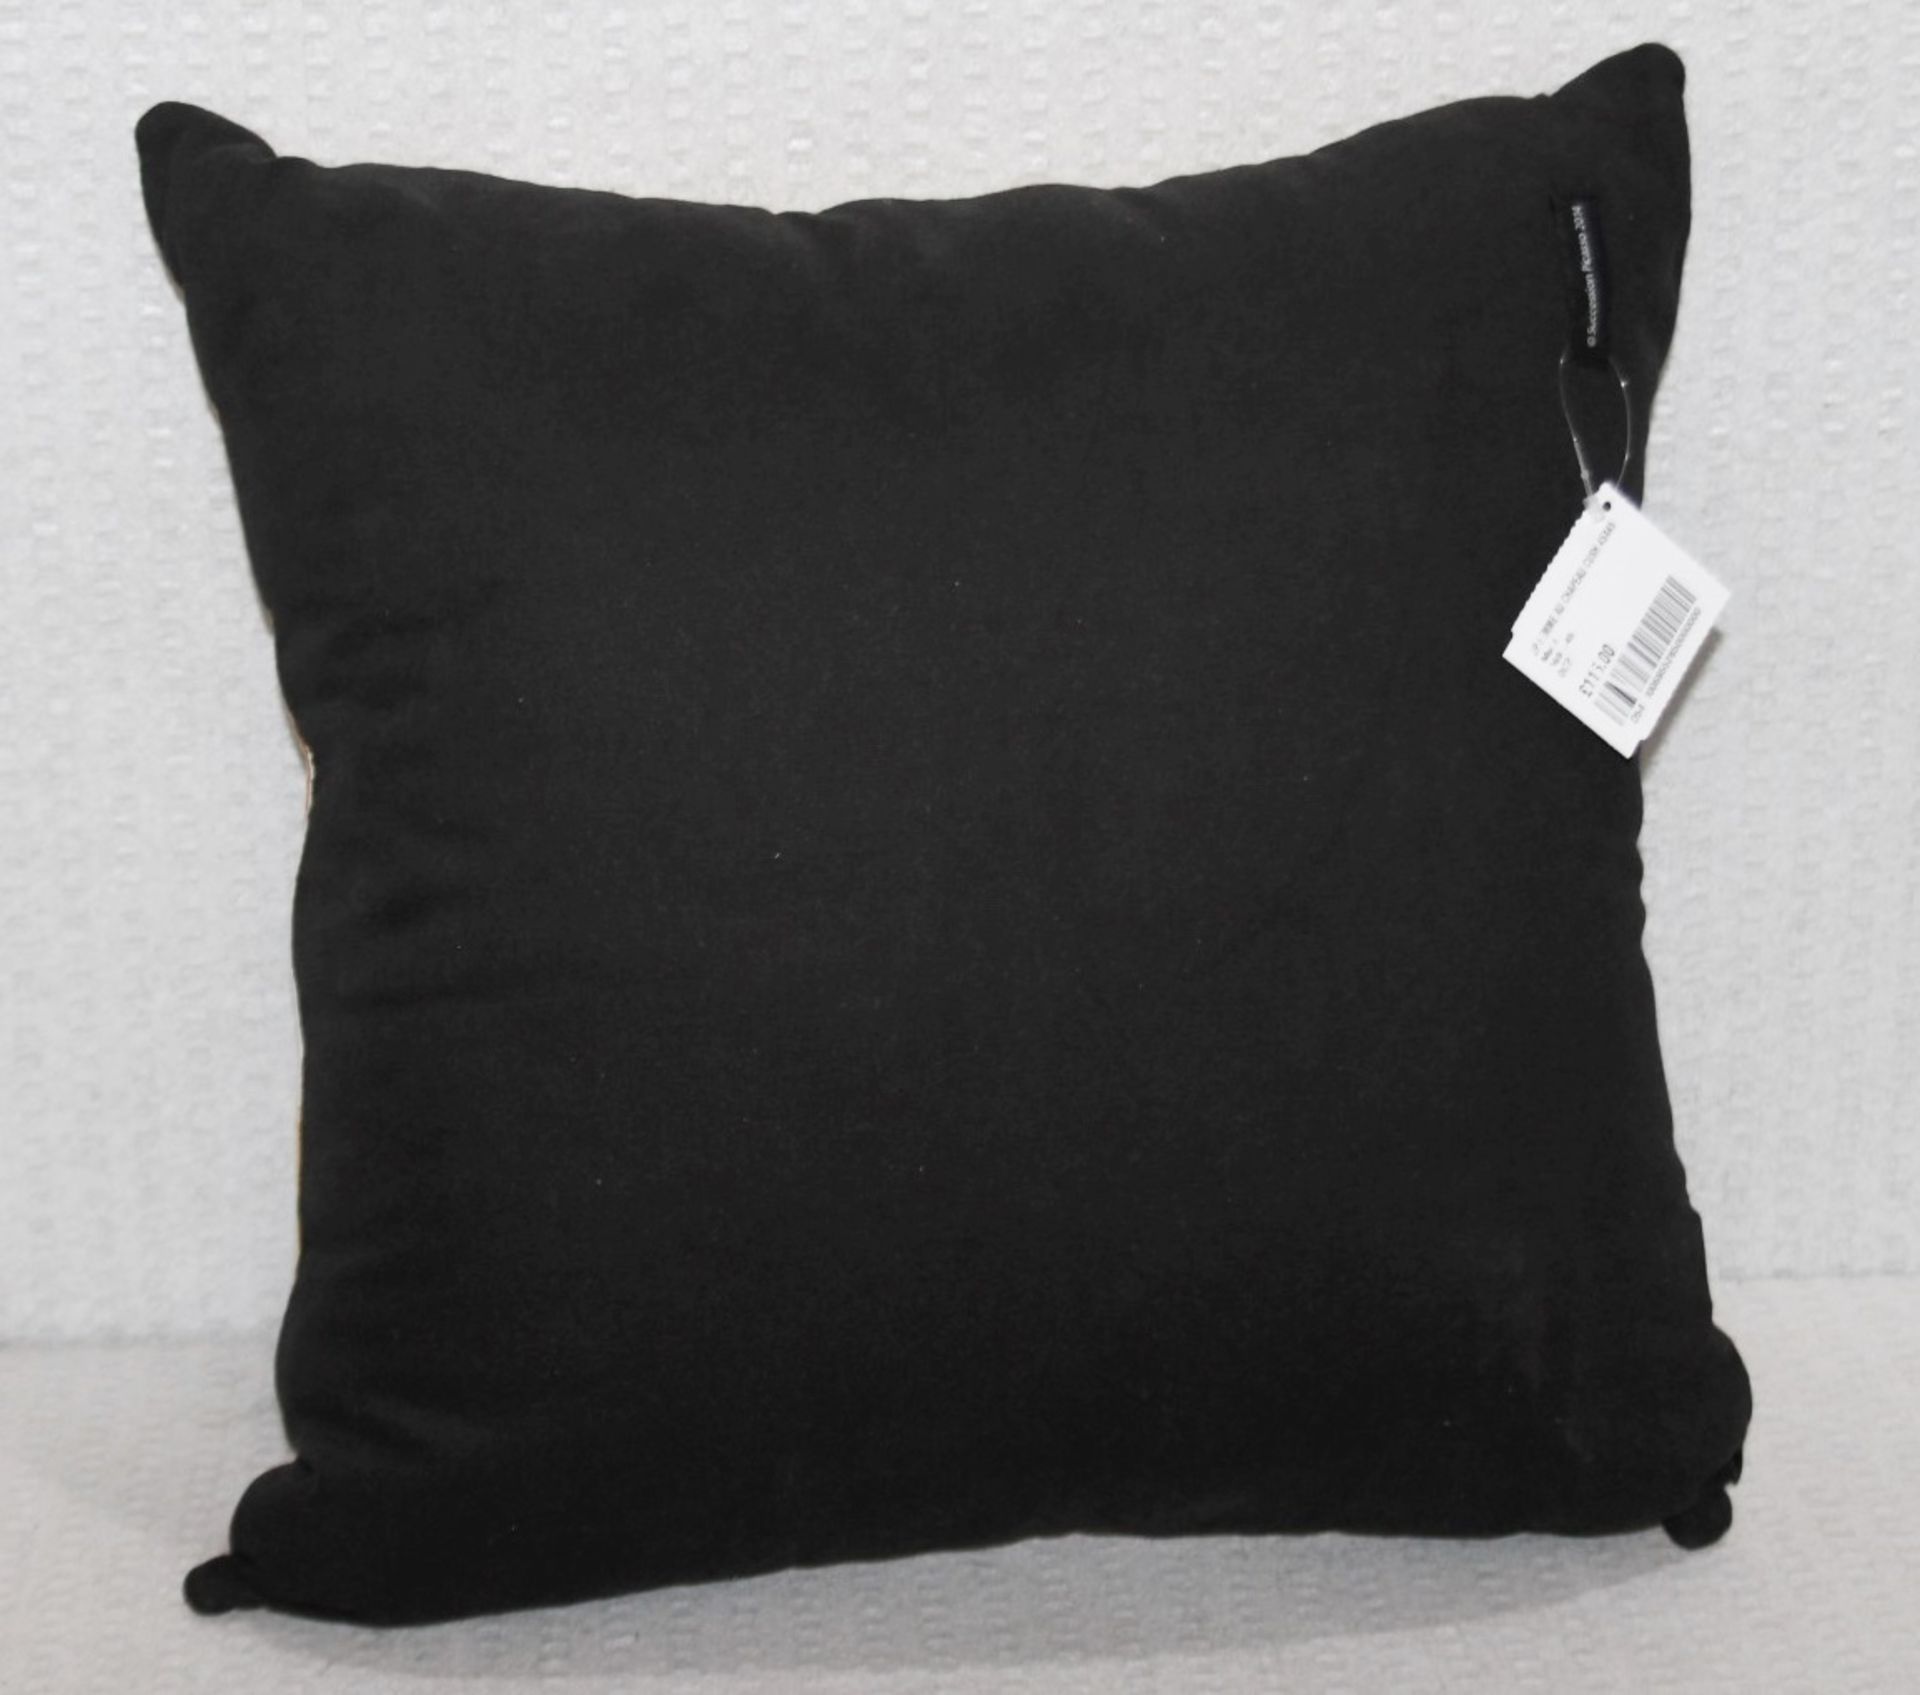 1 x JULES PANSU Picasso’s 'Femme Au Chapeau' Designer Cushion (45cm x 45cm) - Image 7 of 8